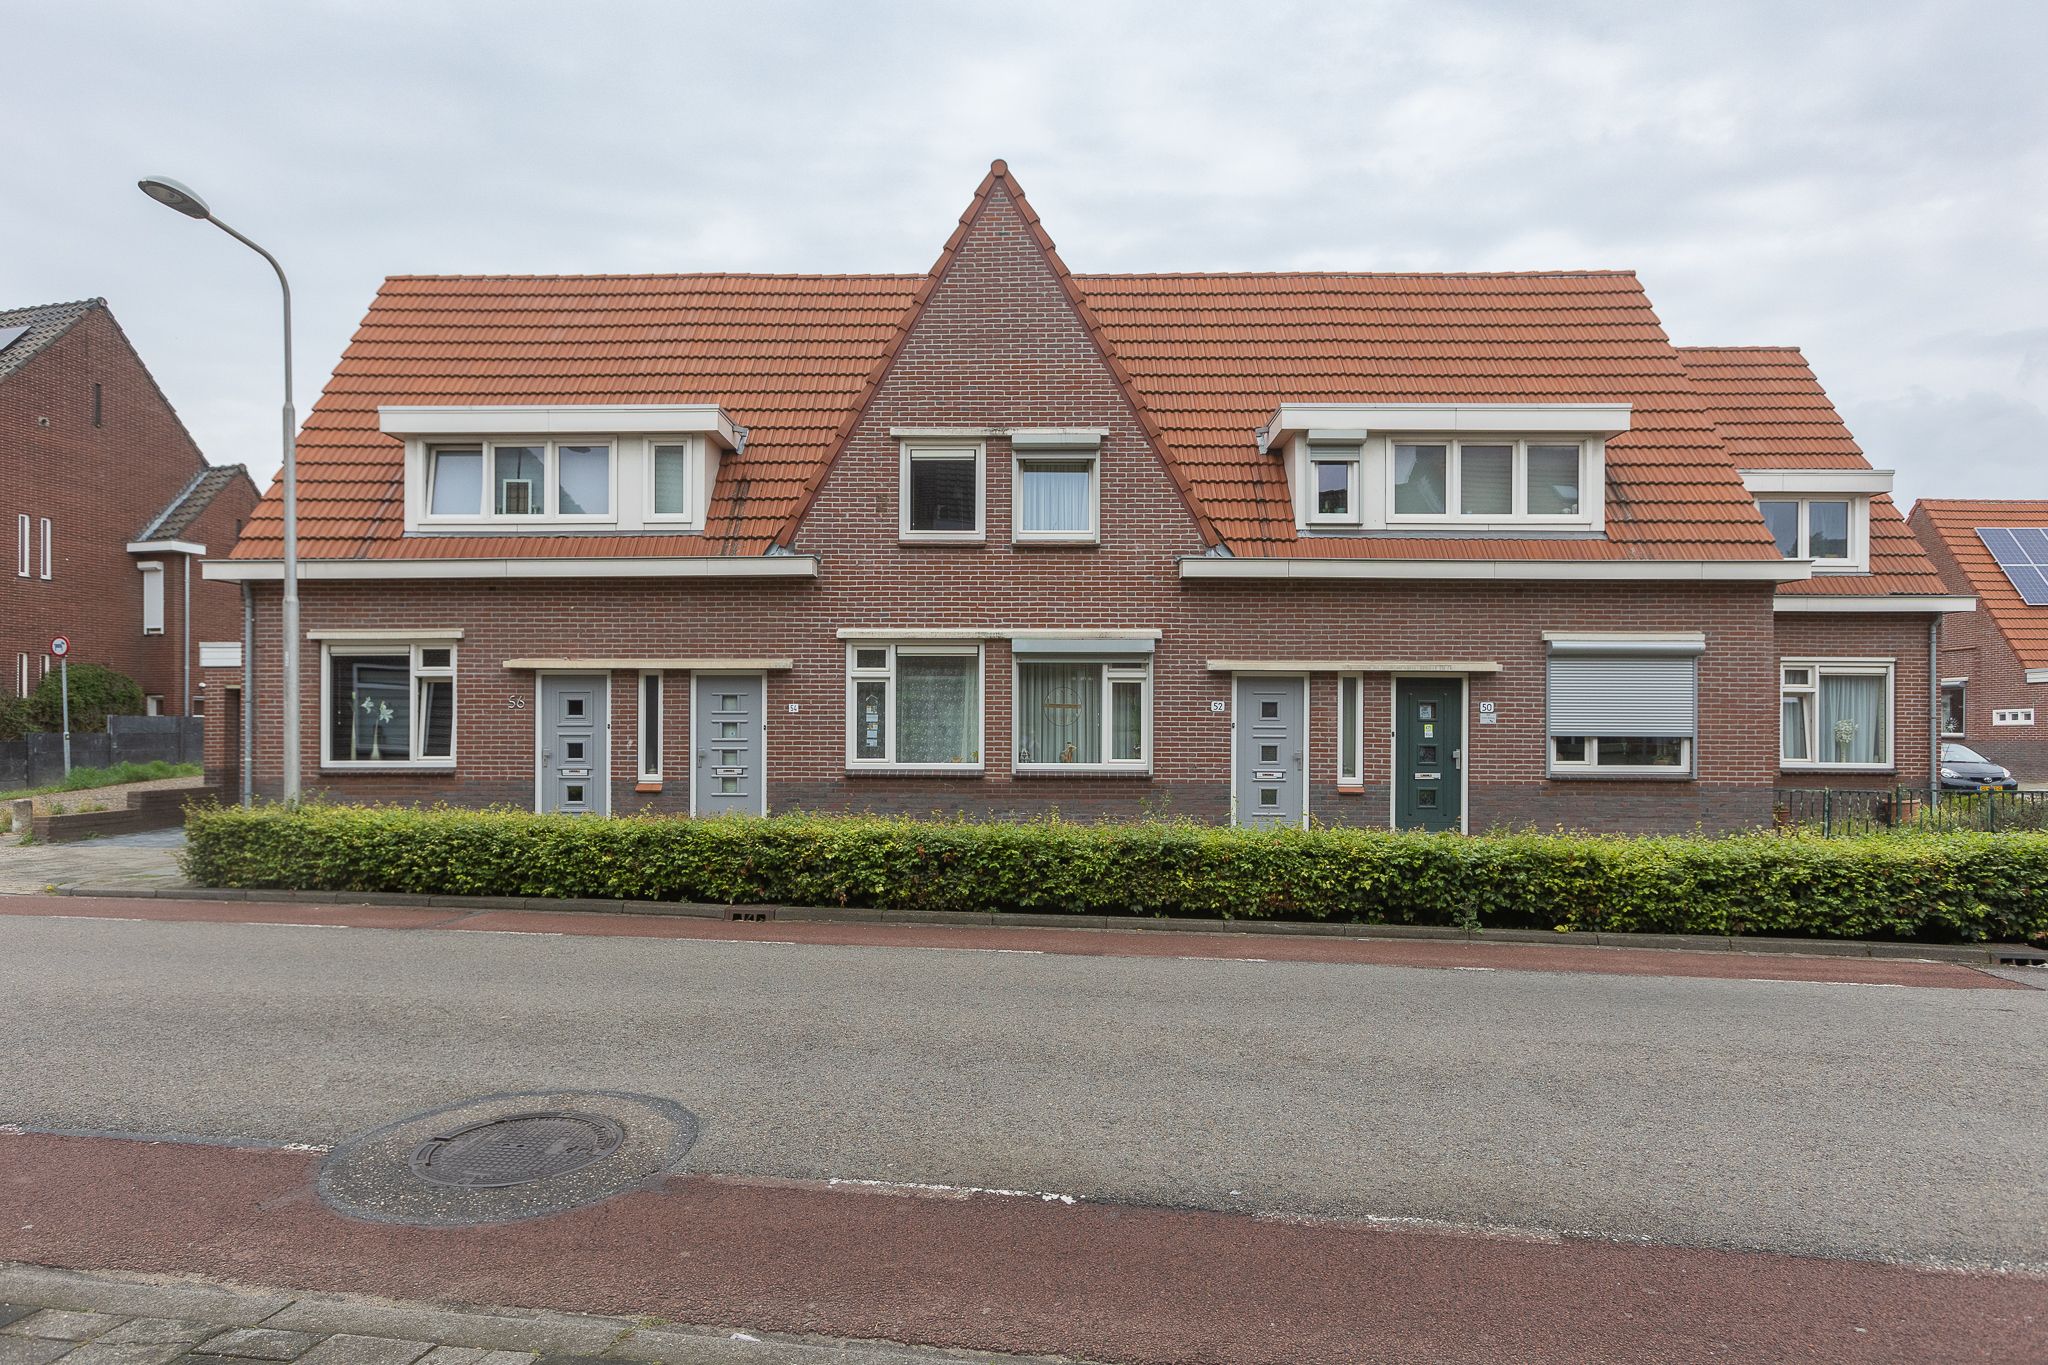 Drievogelstraat 54, 6466 GN Kerkrade, Nederland